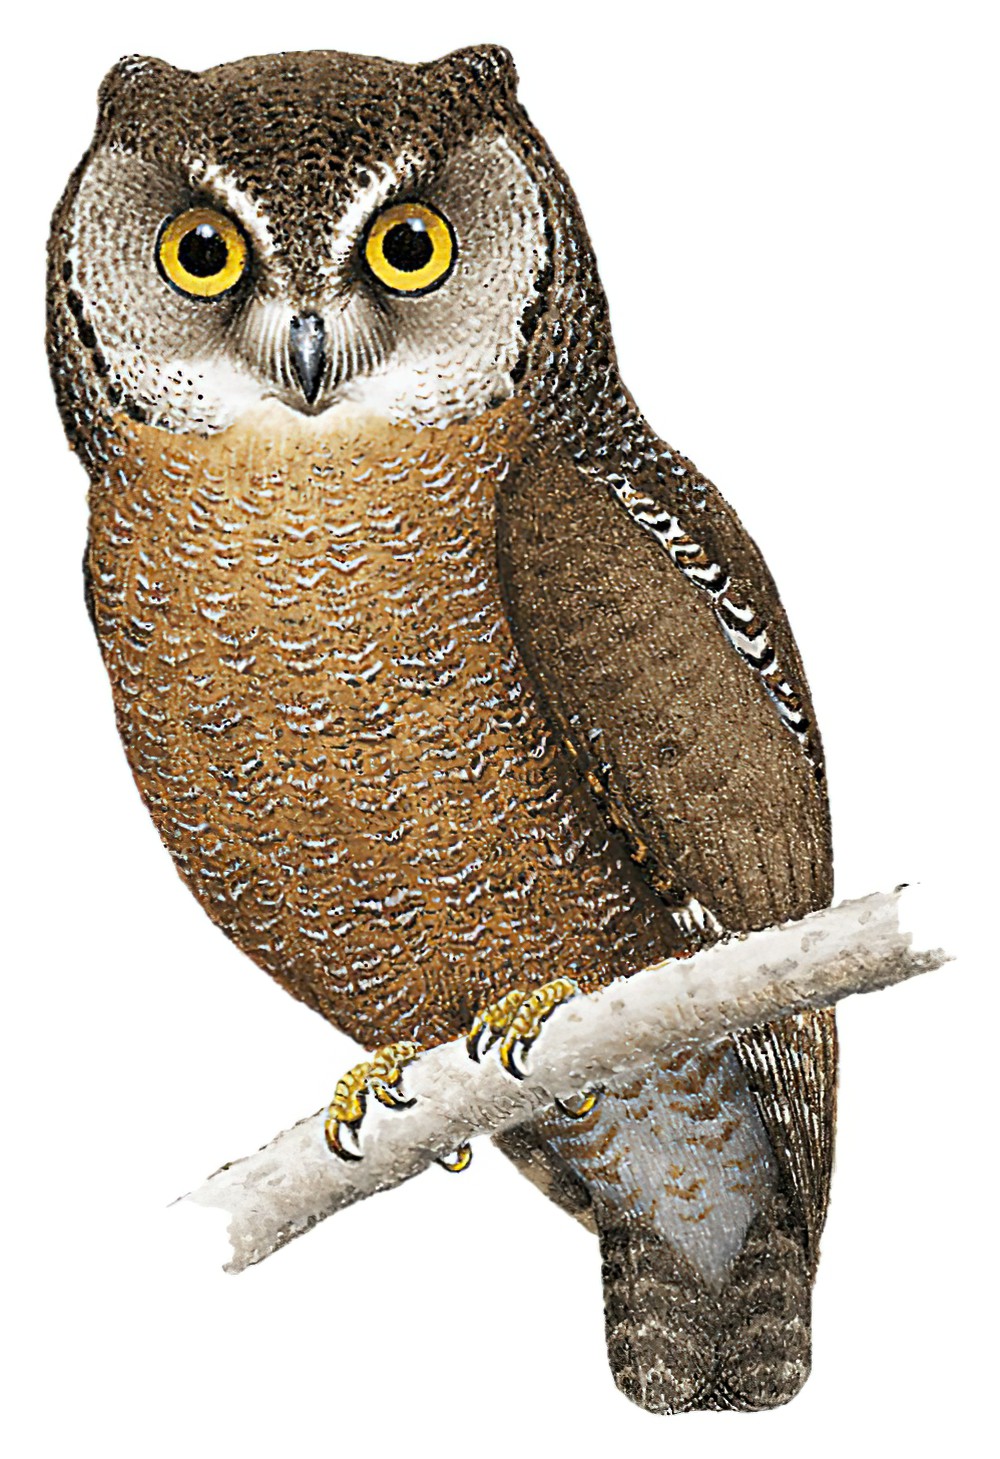 Biak Scops-Owl / Otus beccarii